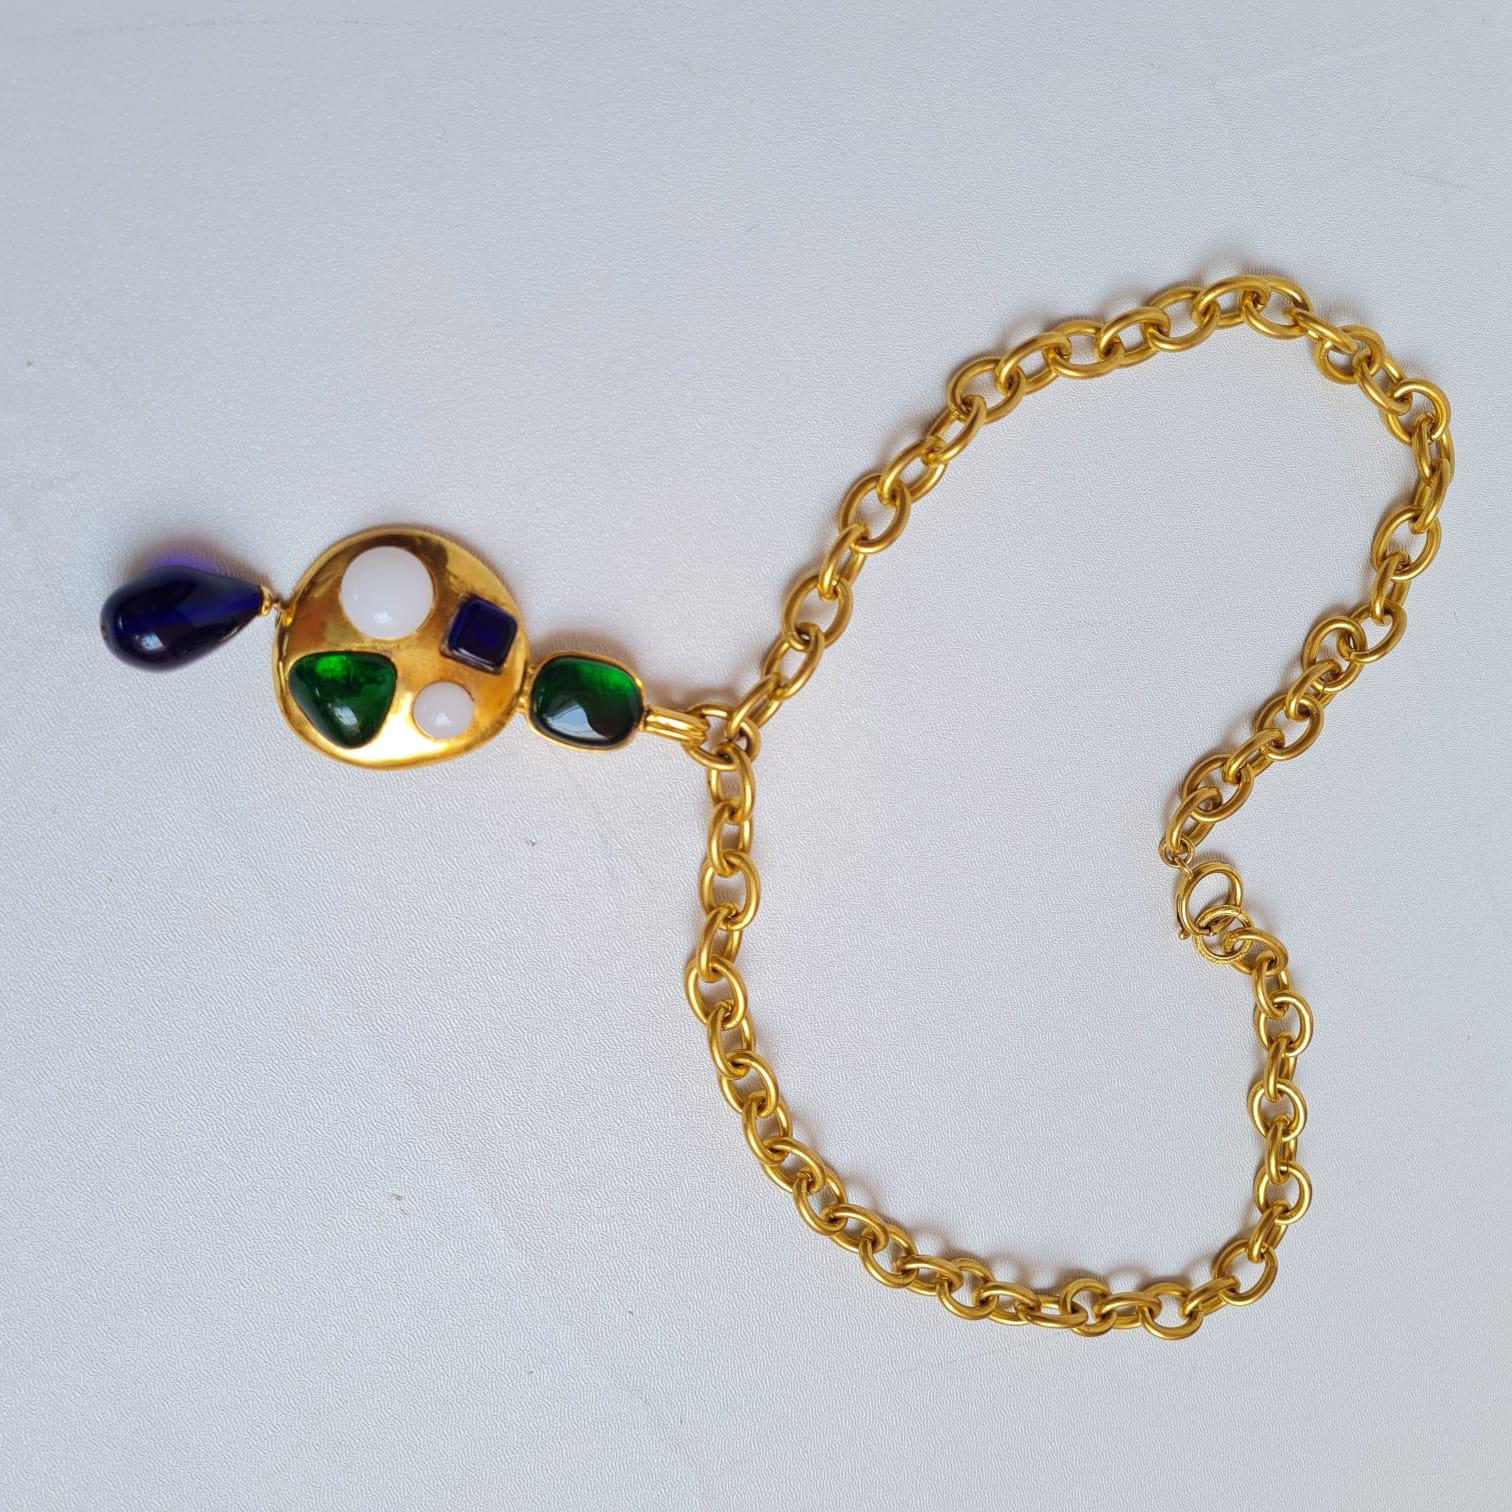 Très rare collier de perles gripoix en or de Chanel. Dans l'ensemble, en excellent état vintage. Une pièce de collection. Vient tel quel.